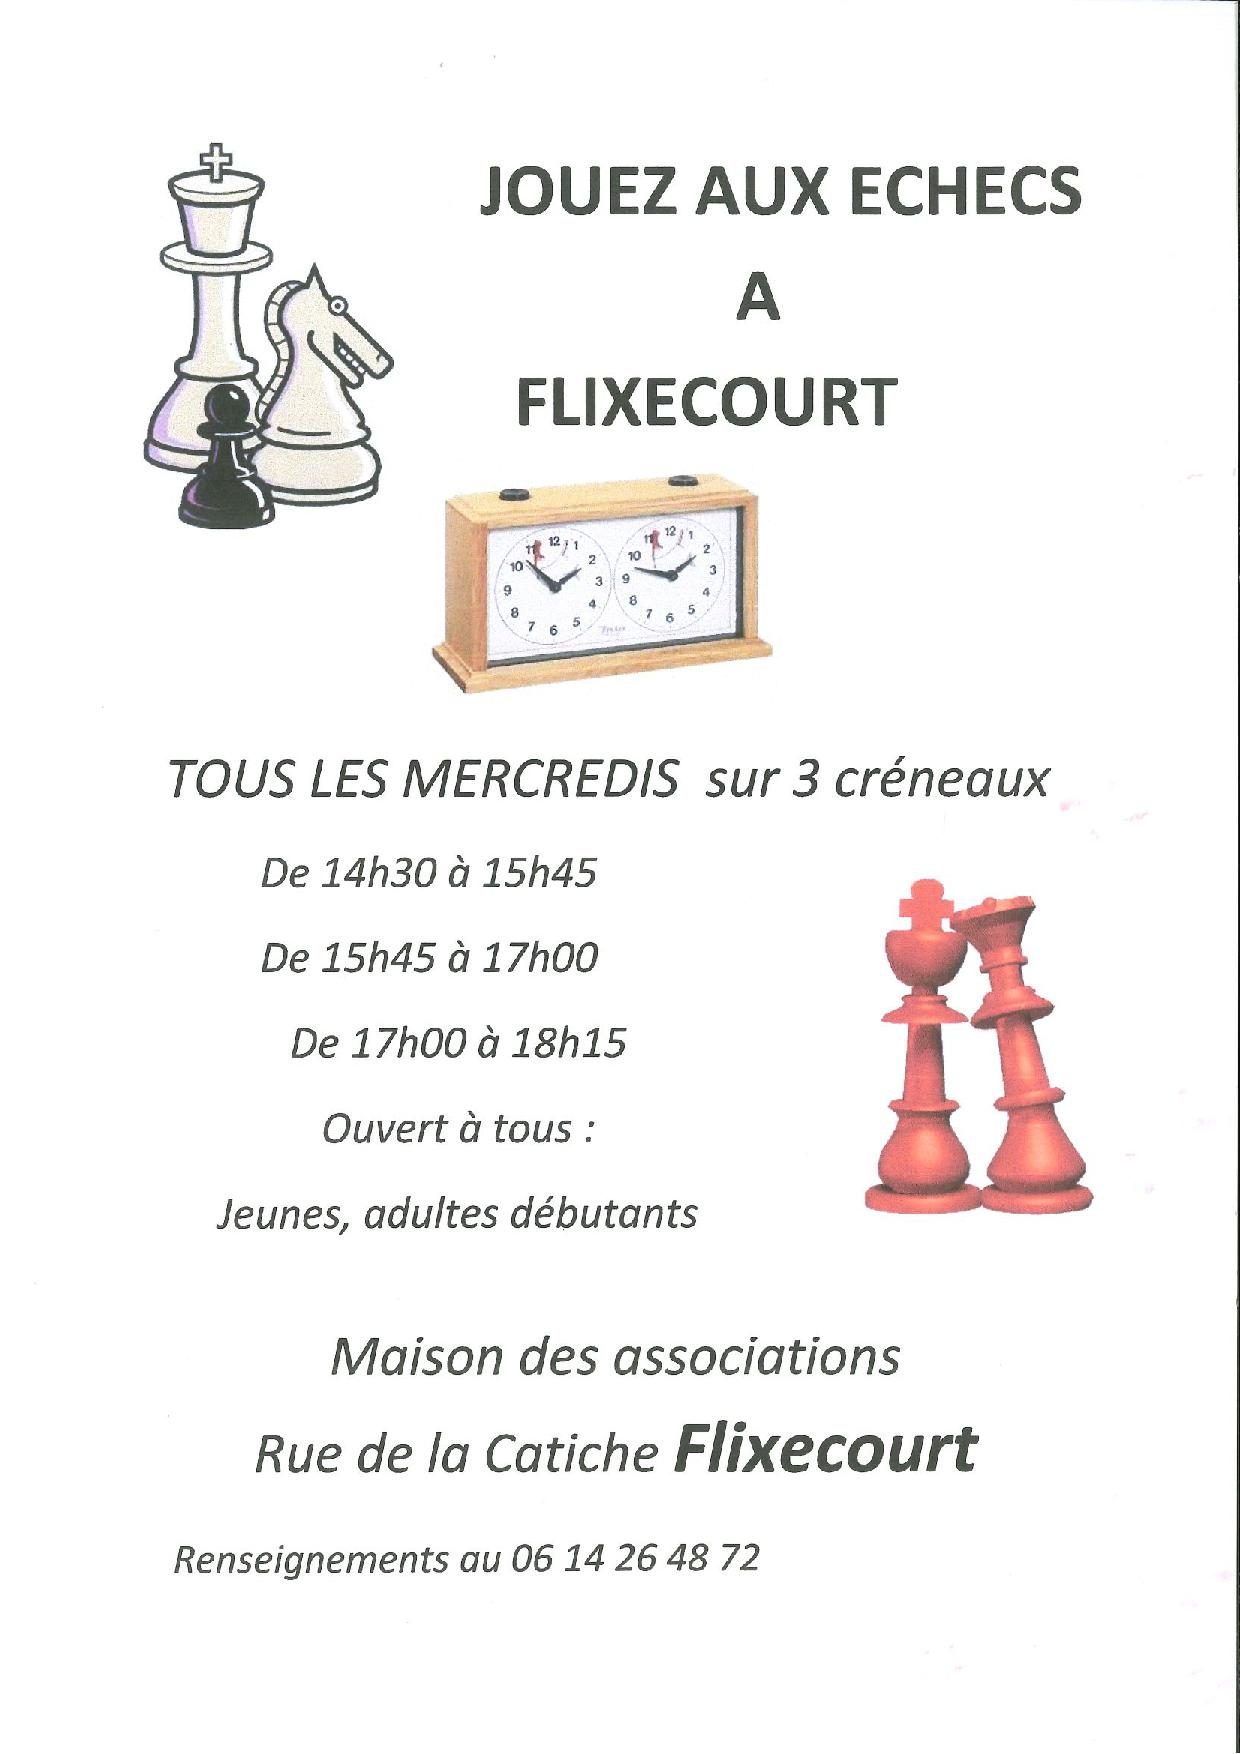 Jouez aux échecs à Flixecourt